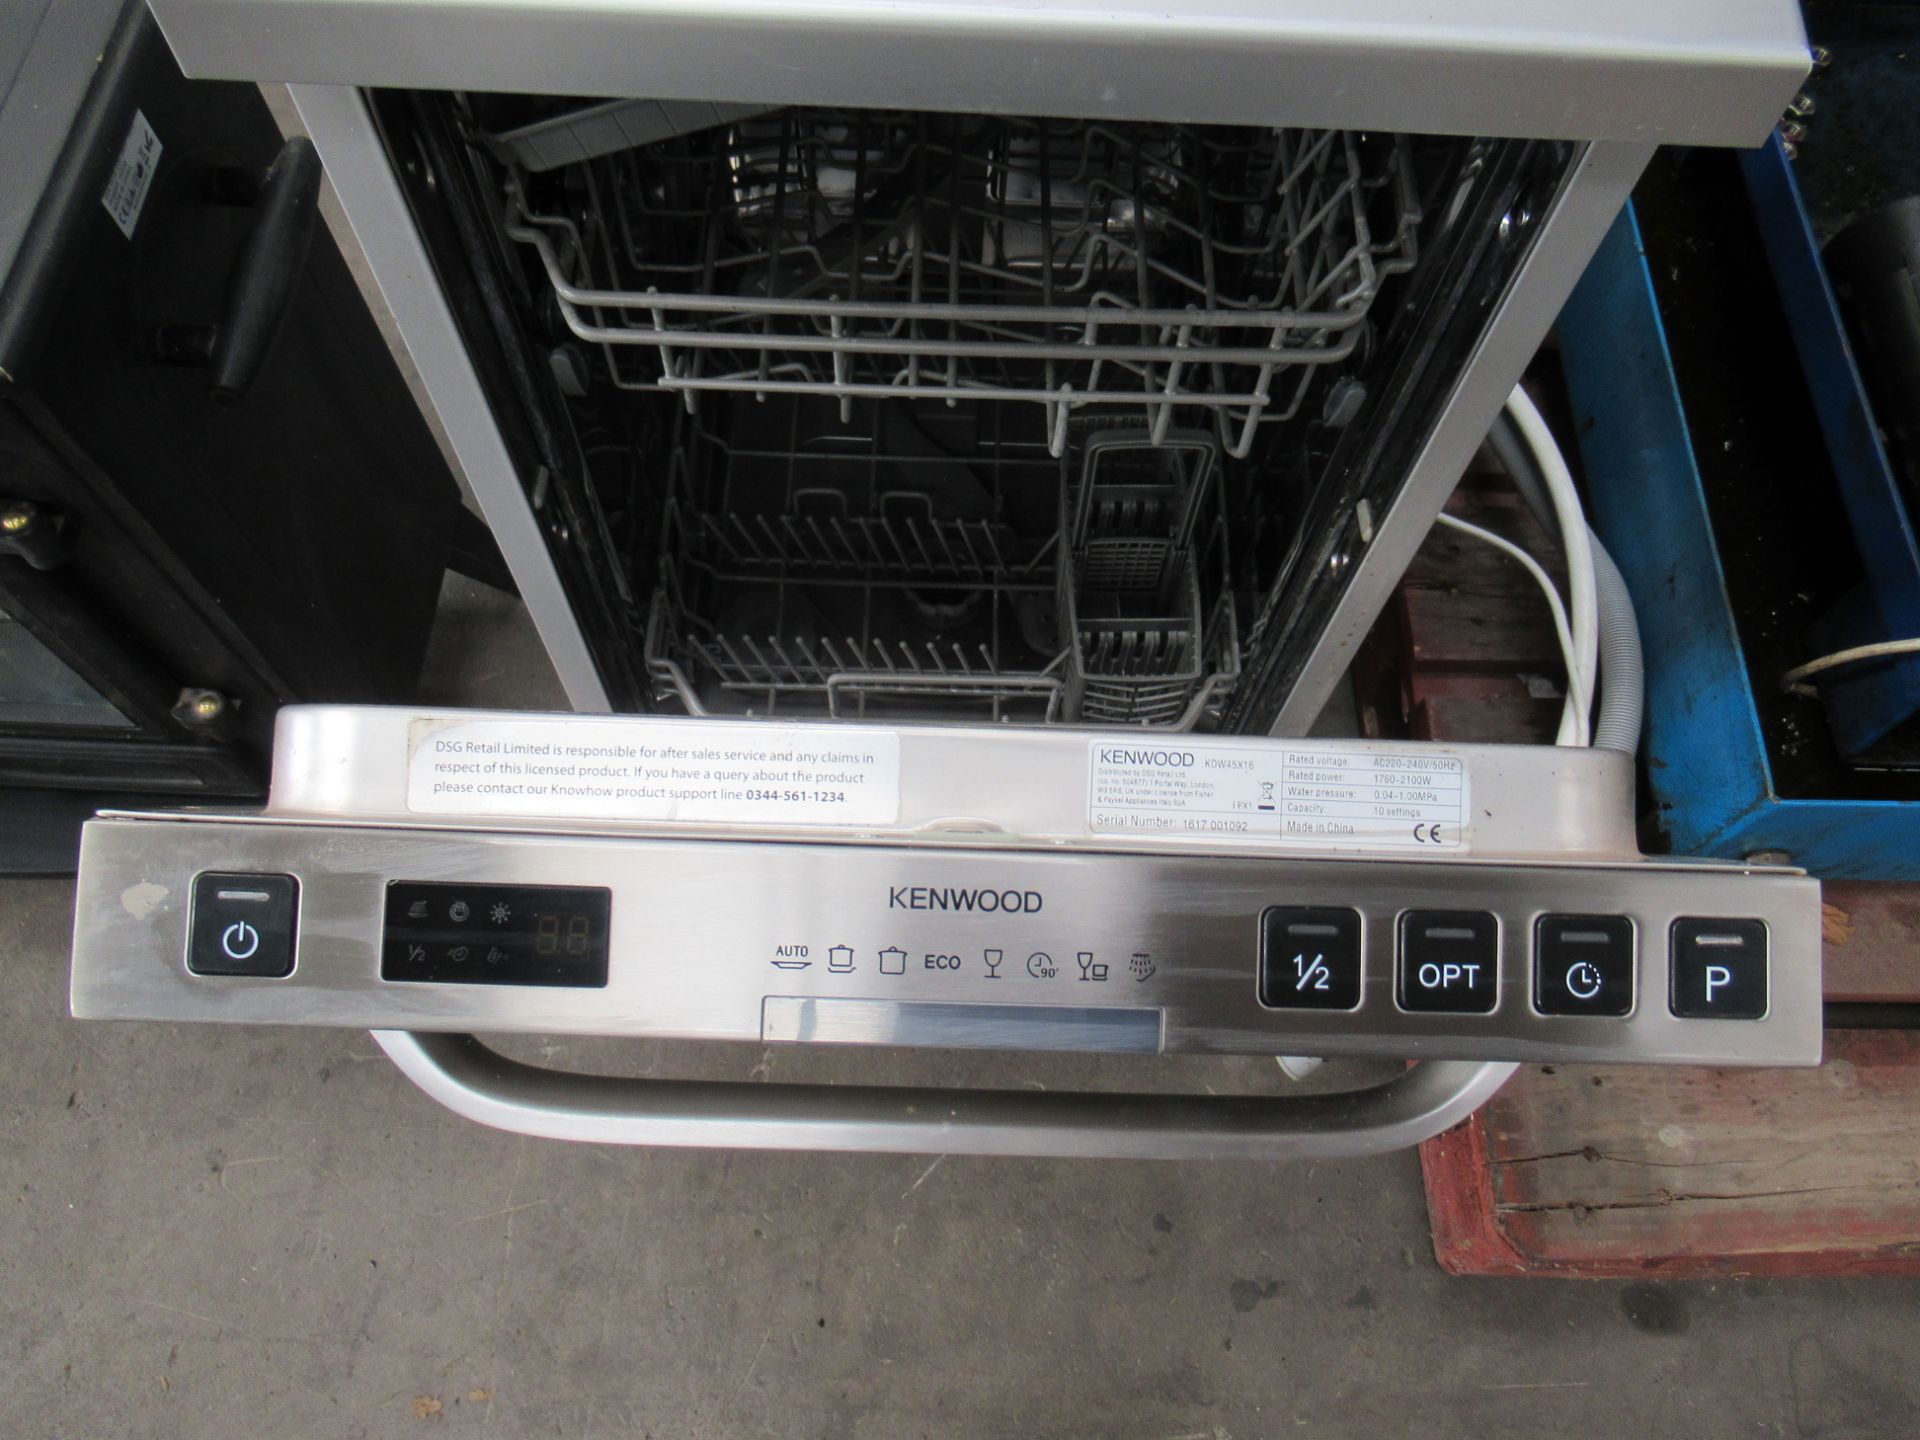 Kenwood KDW45X16 Slimline Dishwasher - Image 2 of 4